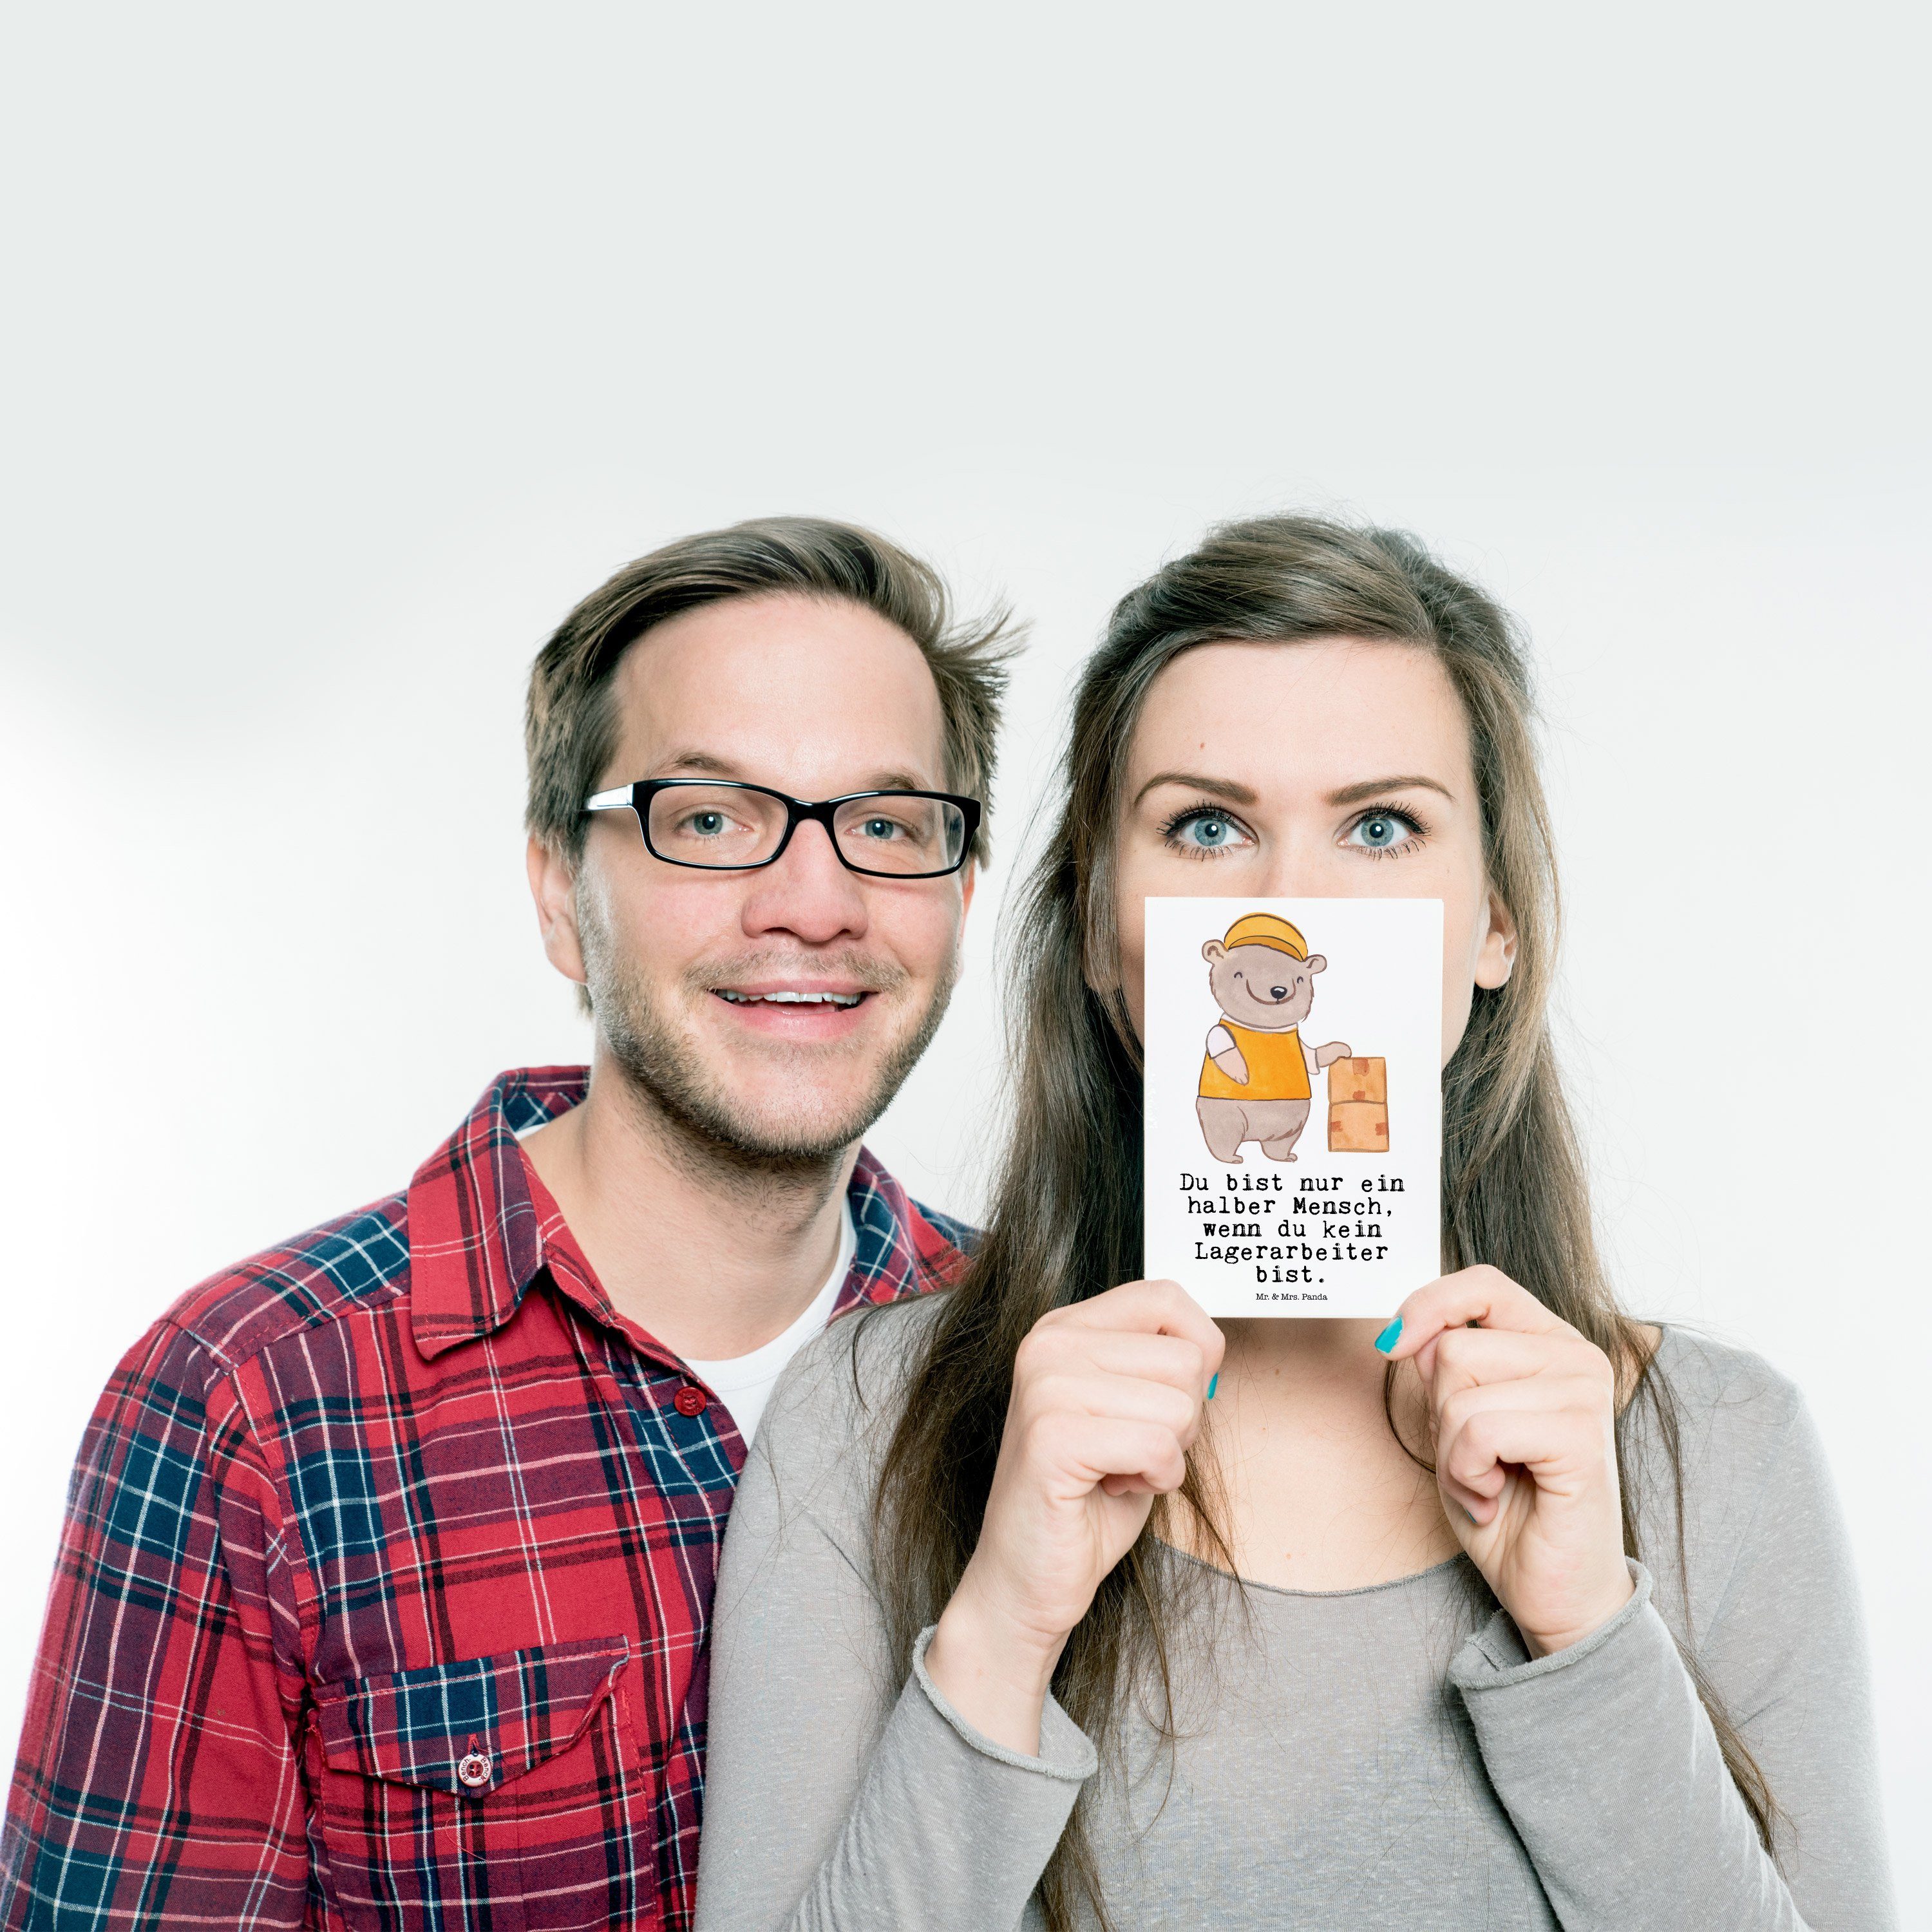 Mr. Panda Postkarte & Mrs. Lagerarbeiter Lagerist, - Herz Geschenk, mit Weiß Geburtstagskarte -